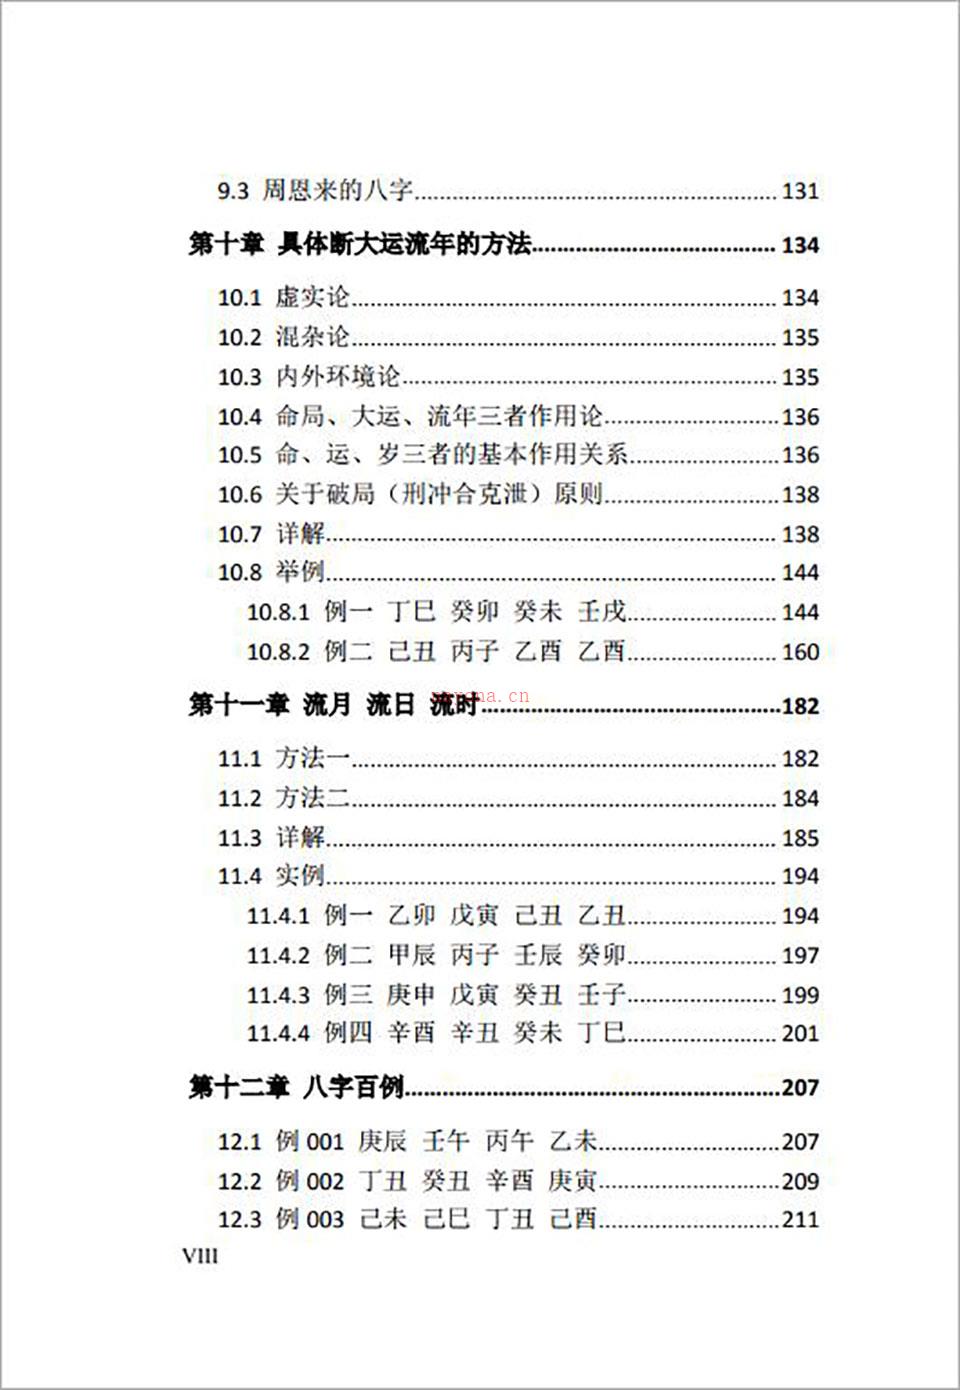 千古子平网络版465页.pdf 百度网盘资源